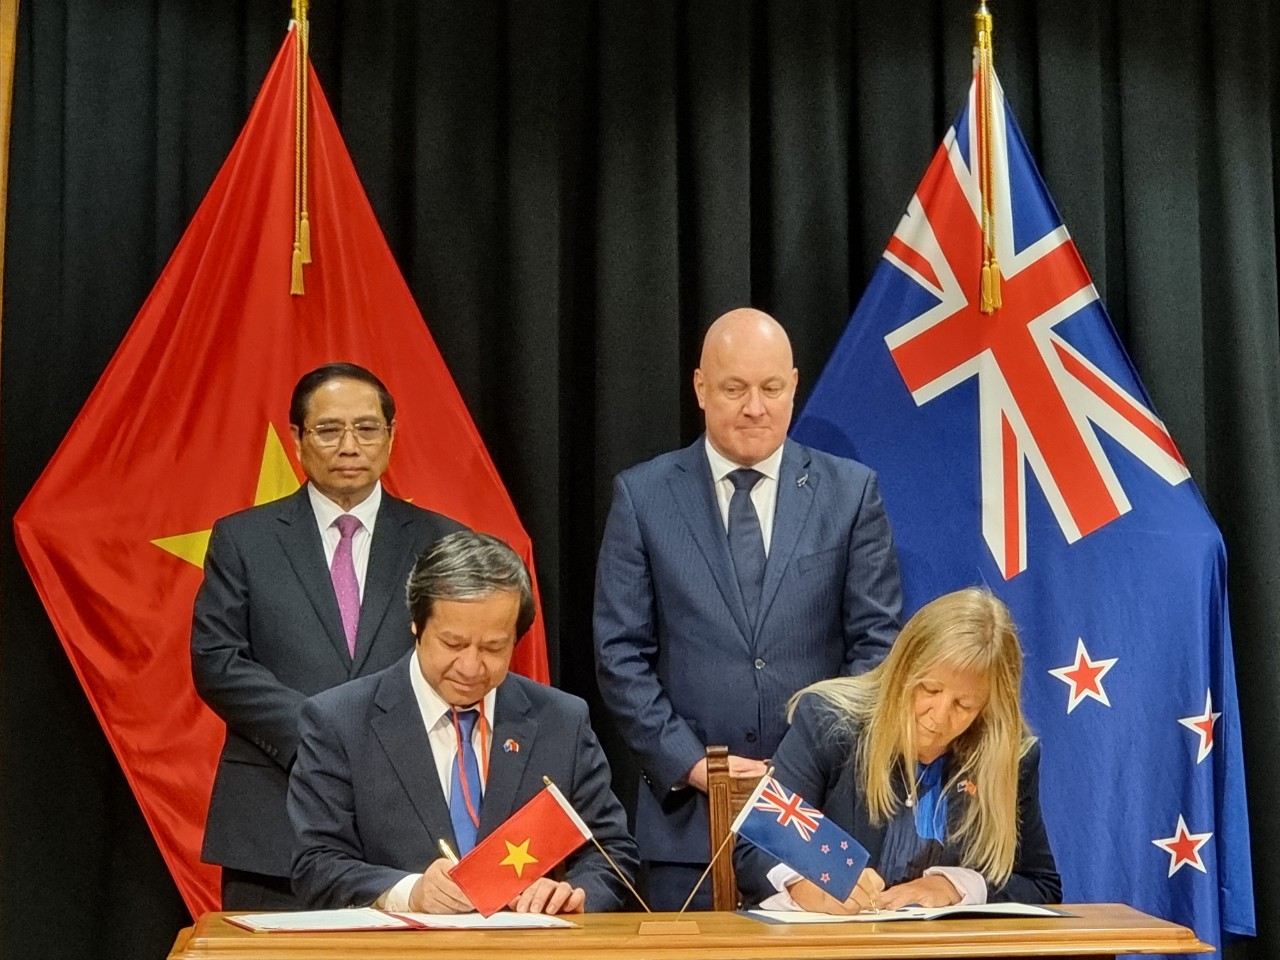 Trước sự chứng kiến của Thủ tướng hai nước, Bộ trưởng Bộ GDĐT Việt Nam Nguyễn Kim Sơn và Bộ trưởng Giáo dục Cao đẳng, Đại học và Kỹ năng New Zealand ký kết Thoả thuận Hợp tác về Giáo dục.